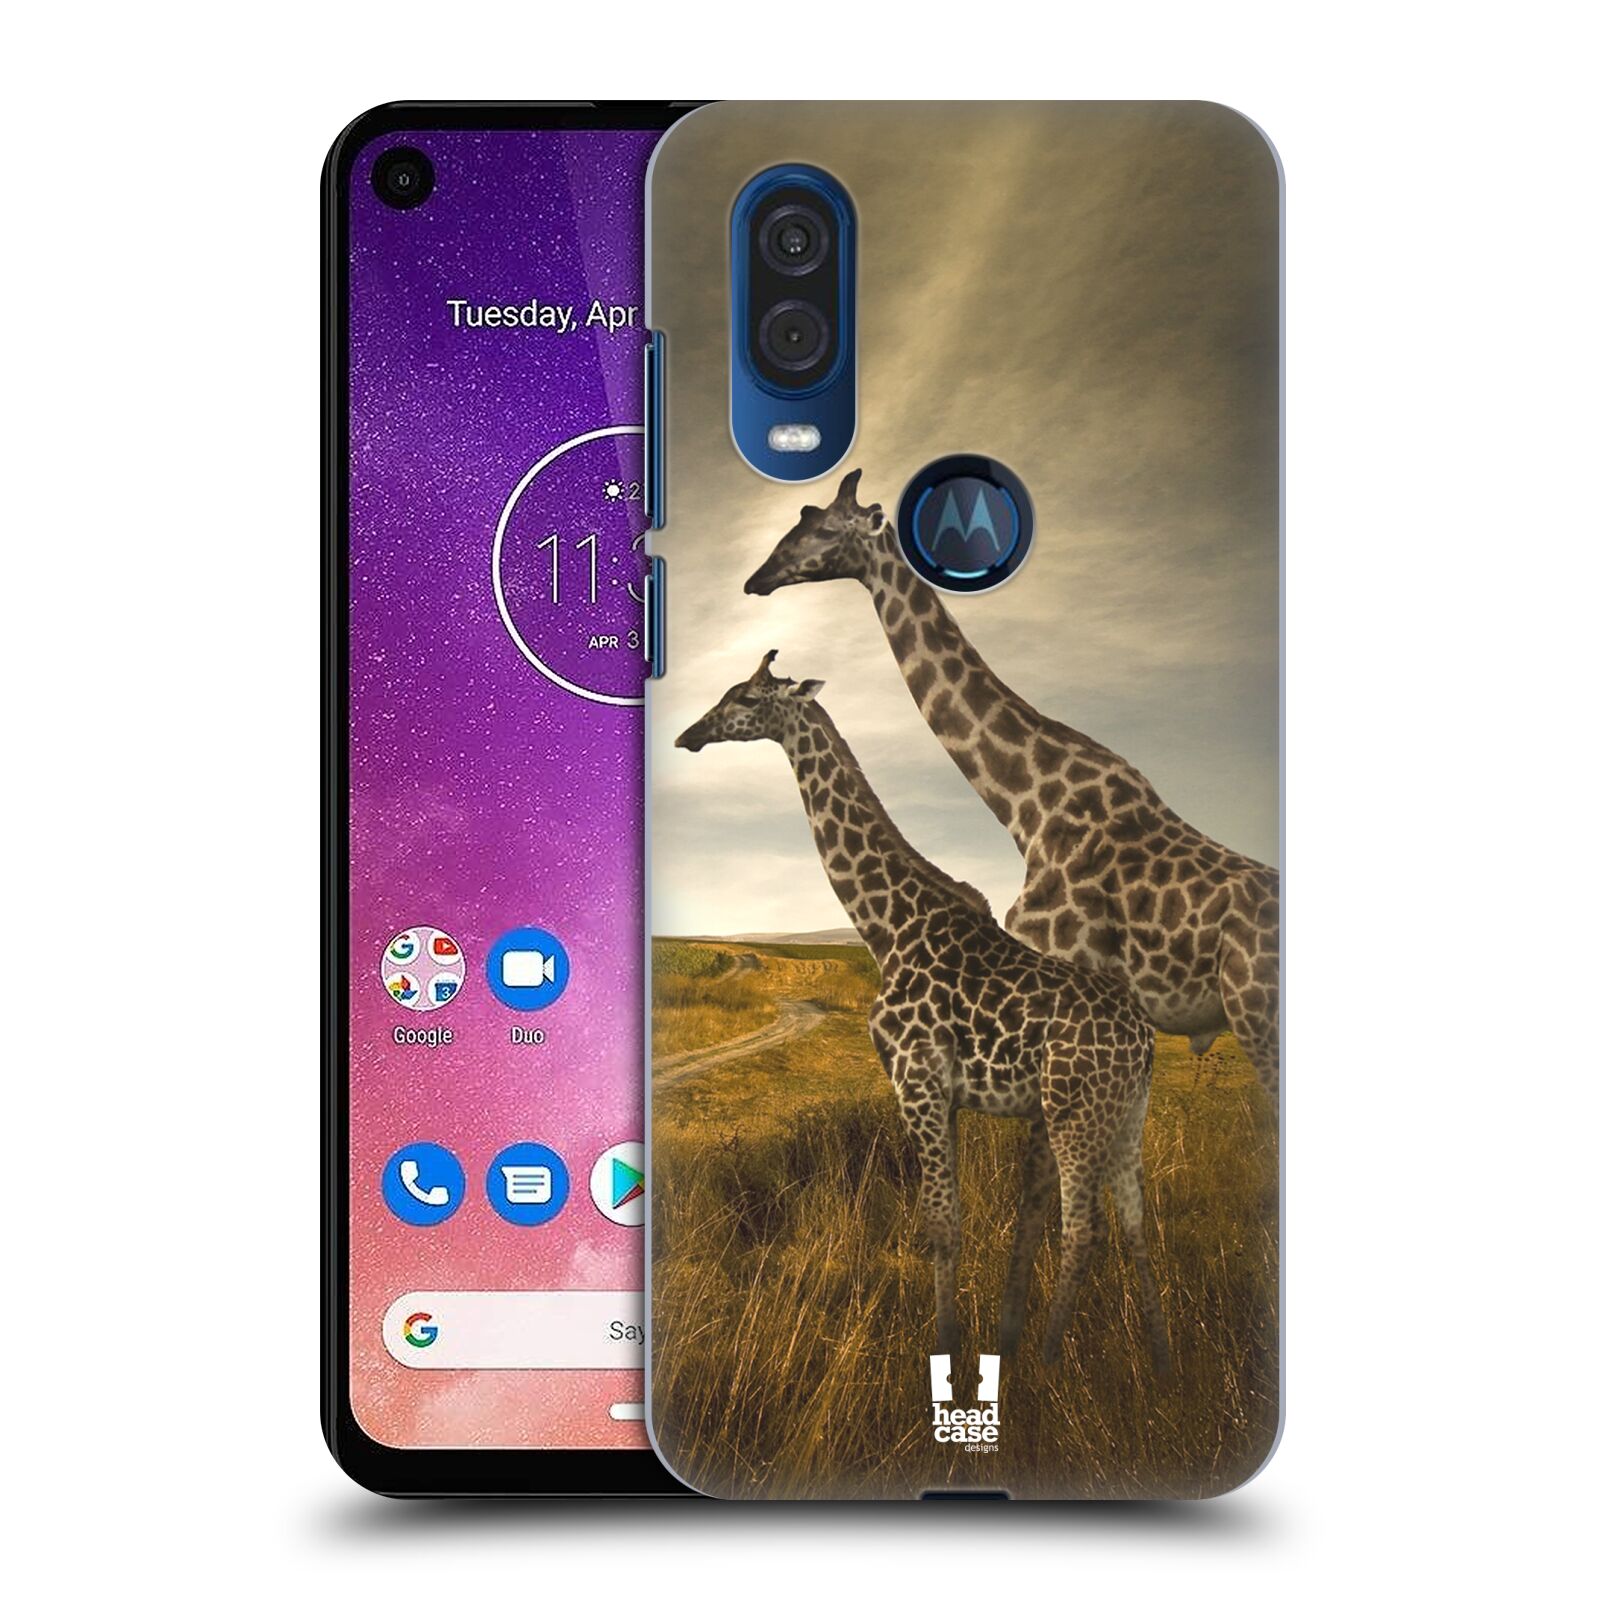 Zadní obal pro mobil Motorola One Vision - HEAD CASE - Svět zvířat žirafy